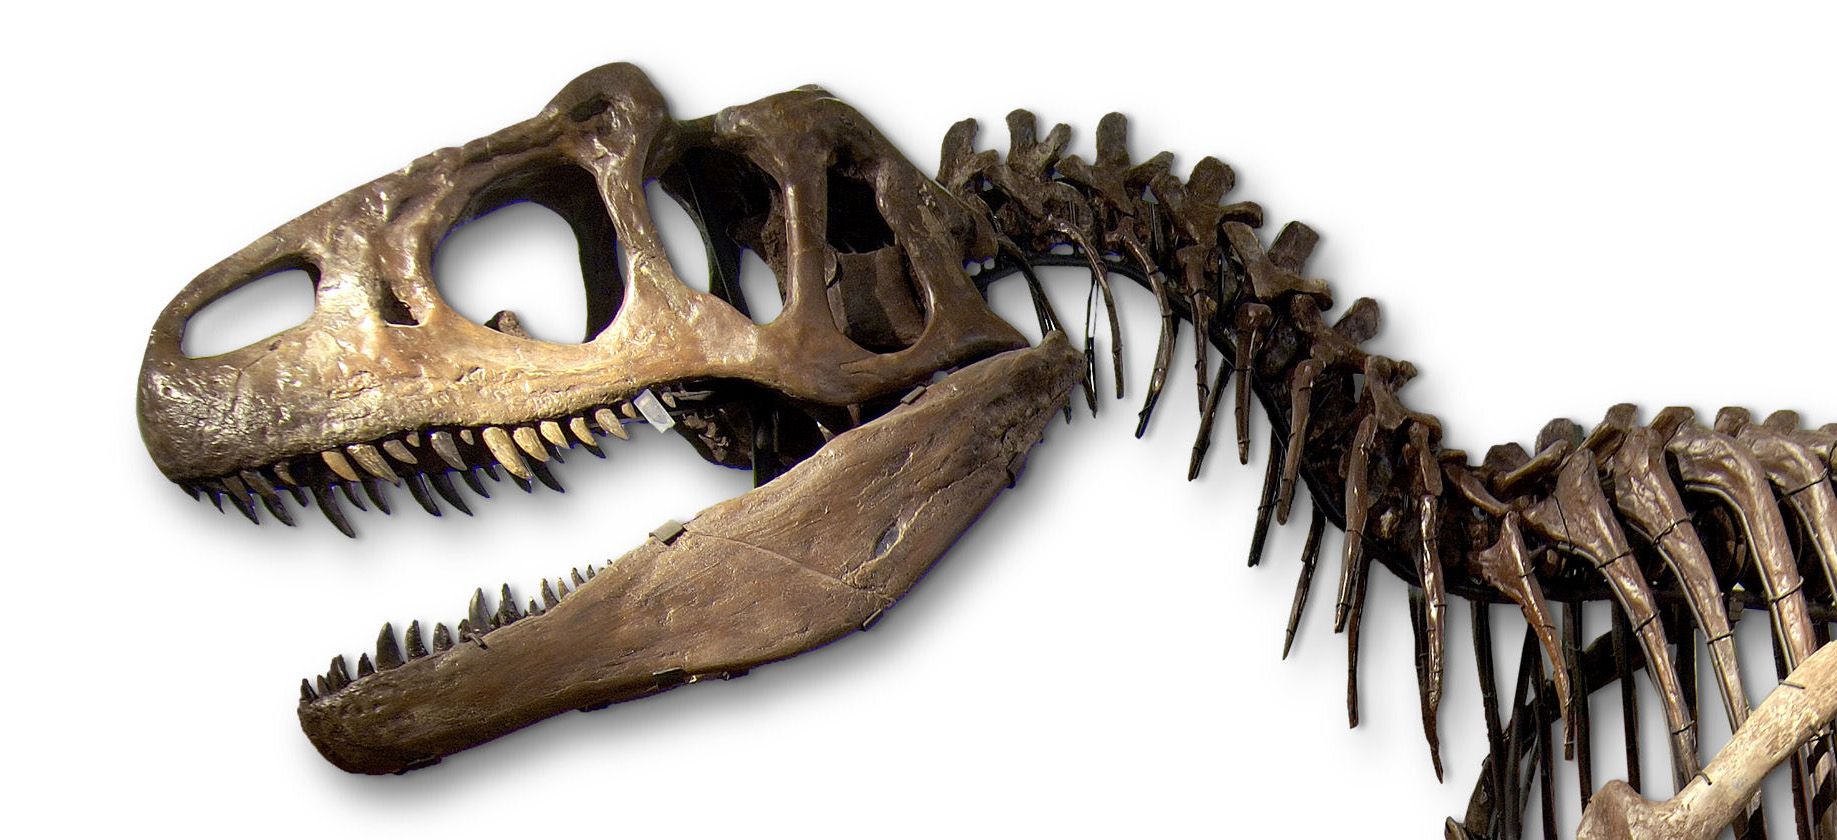 Allosaurus. Collectie Museon